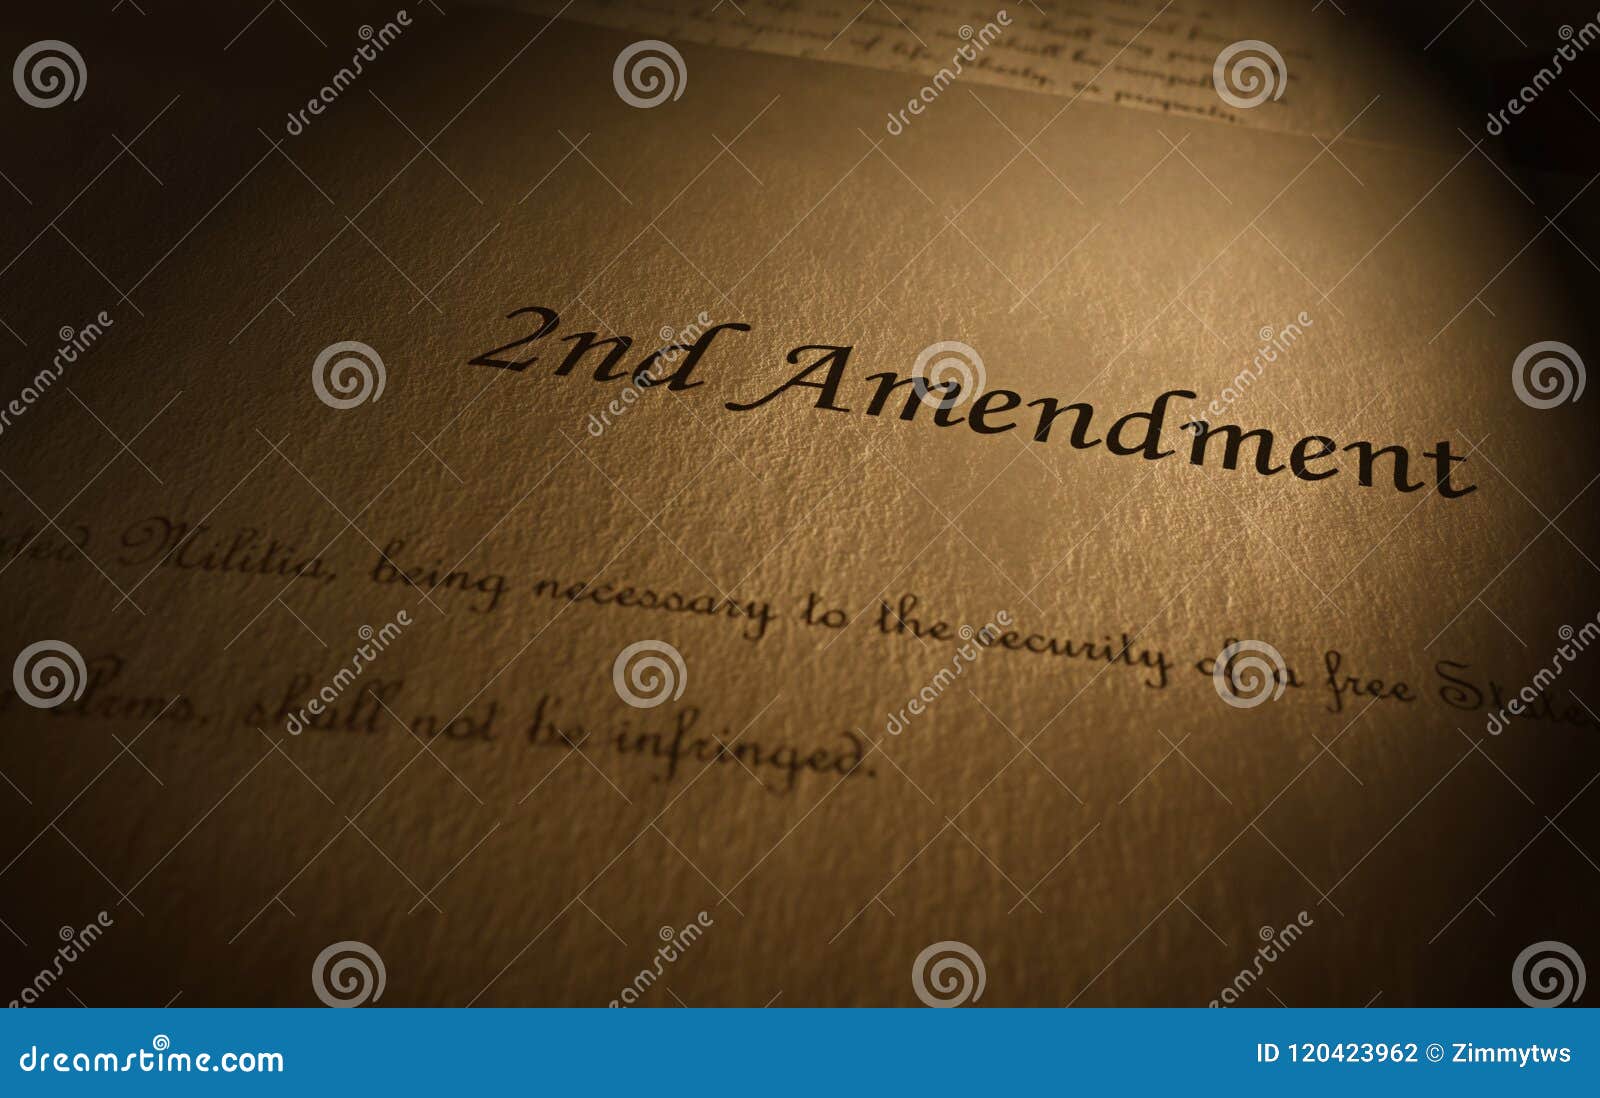 second amendment text